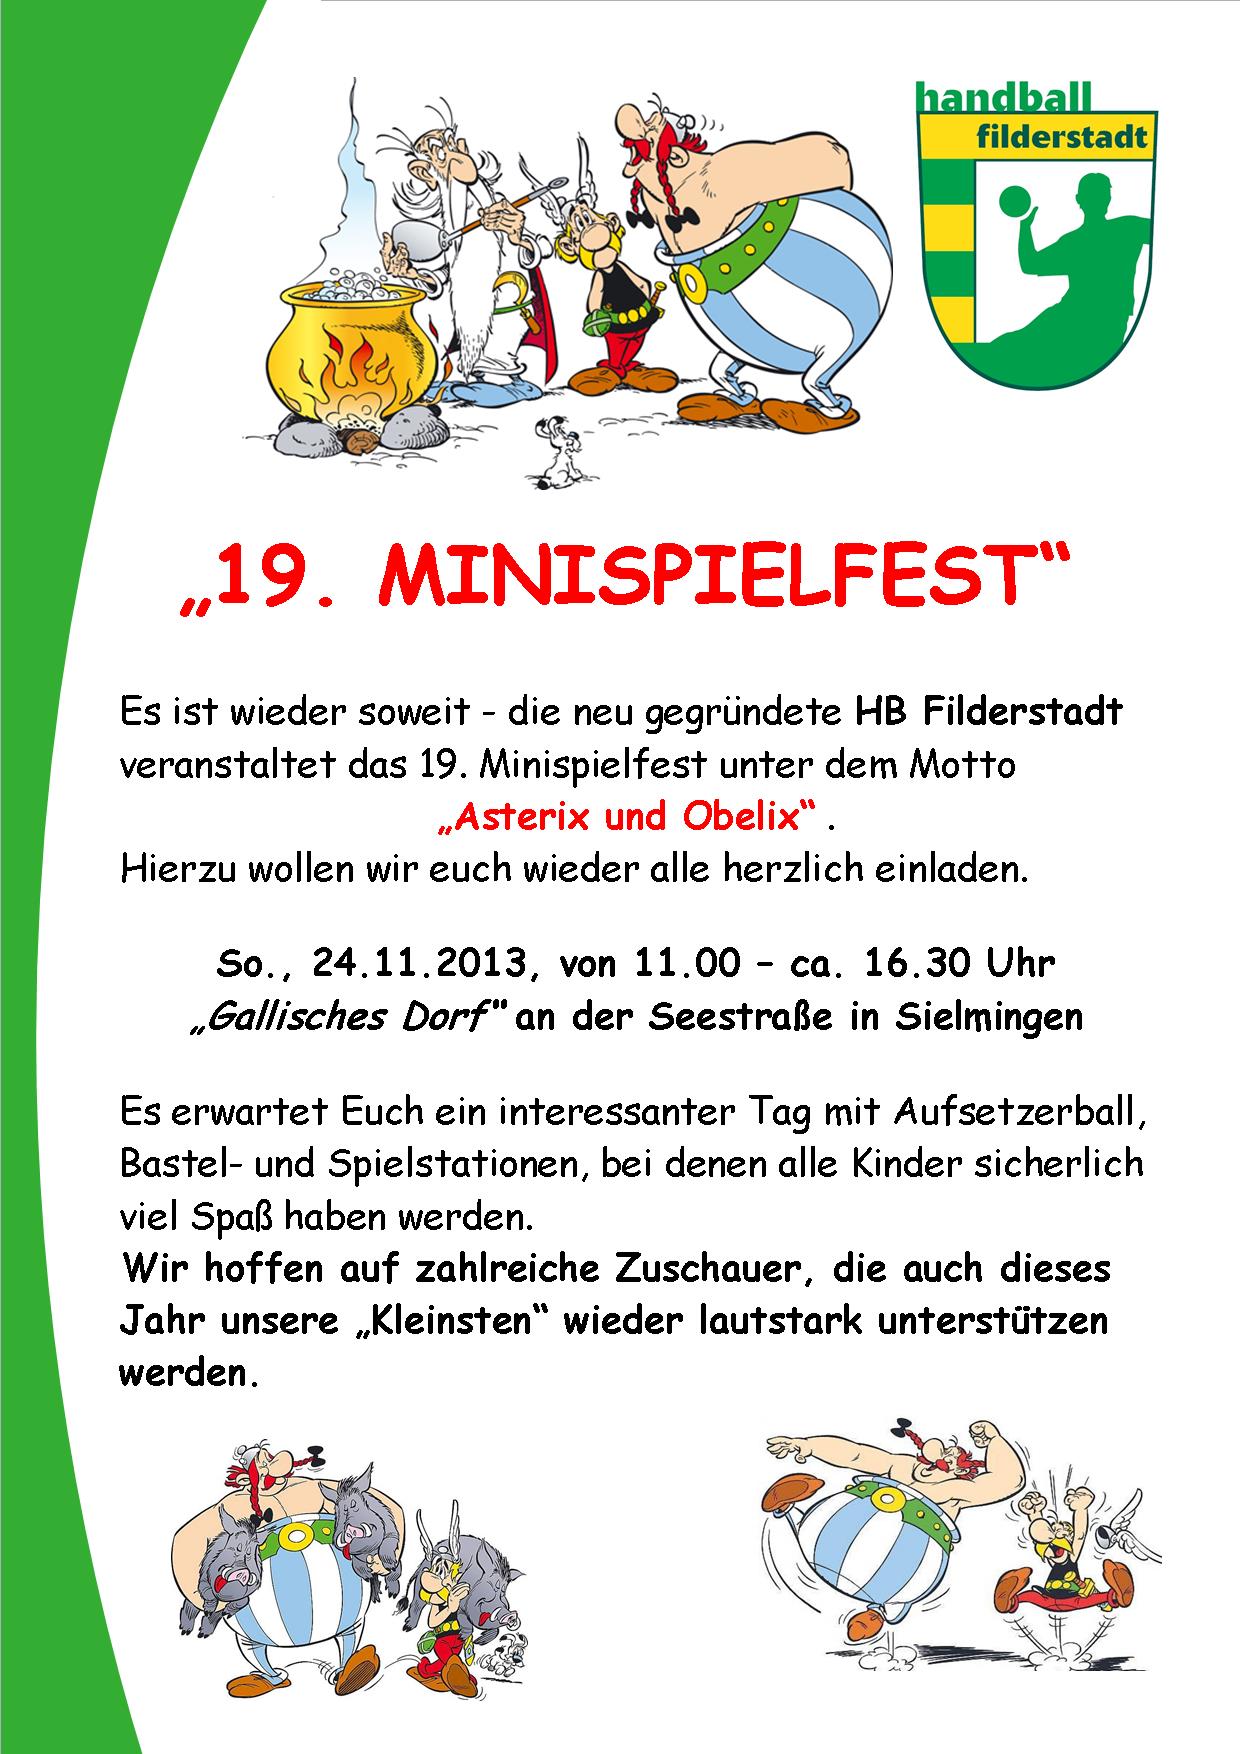 Minispielfest 2013